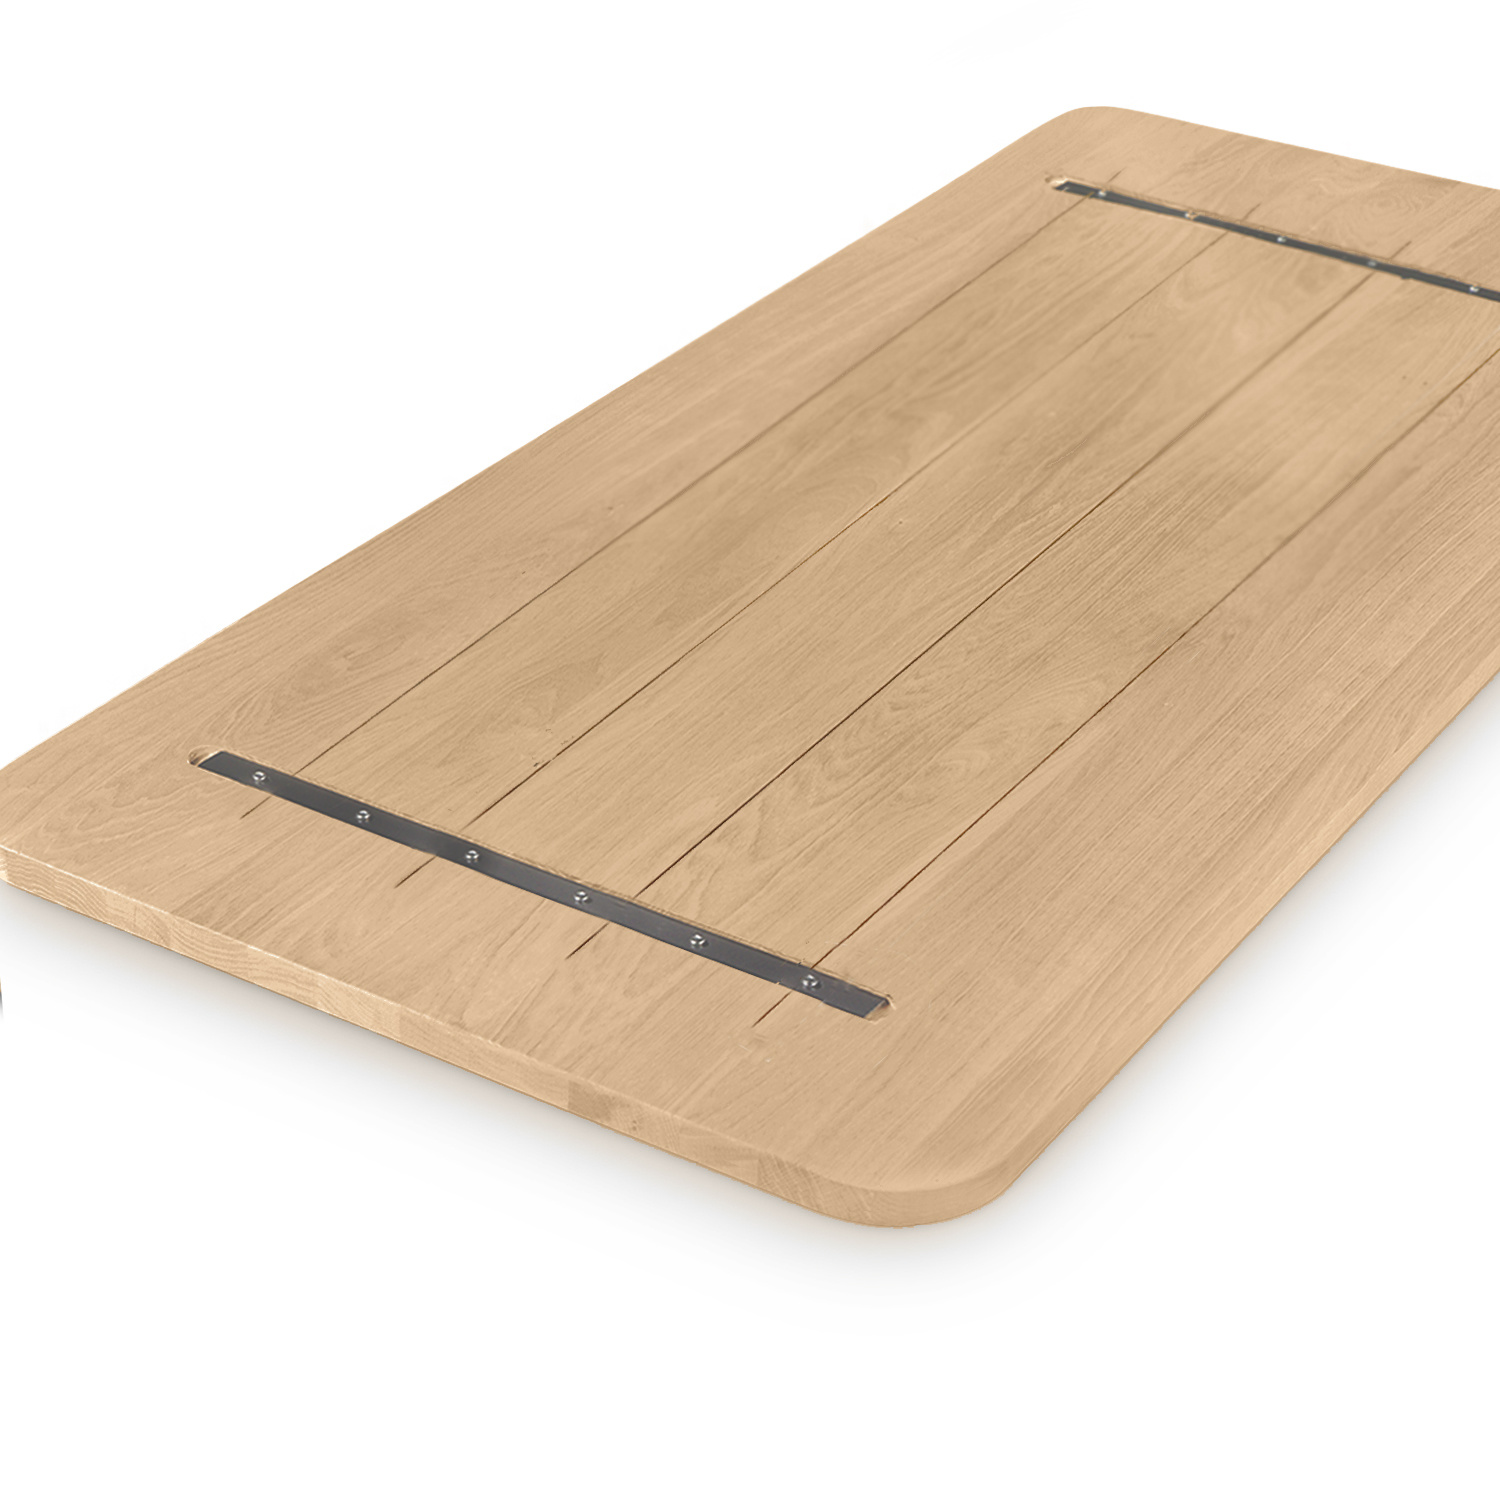  Tischplatte Eiche mit runden Ecken - nach Maß - 2 cm dick - Eichenholz rustikal - Eiche Tischplatte massiv - verleimt & künstlich getrocknet (HF 8-12%) - mit abgerundeten Kanten - 50-120x50-300 cm